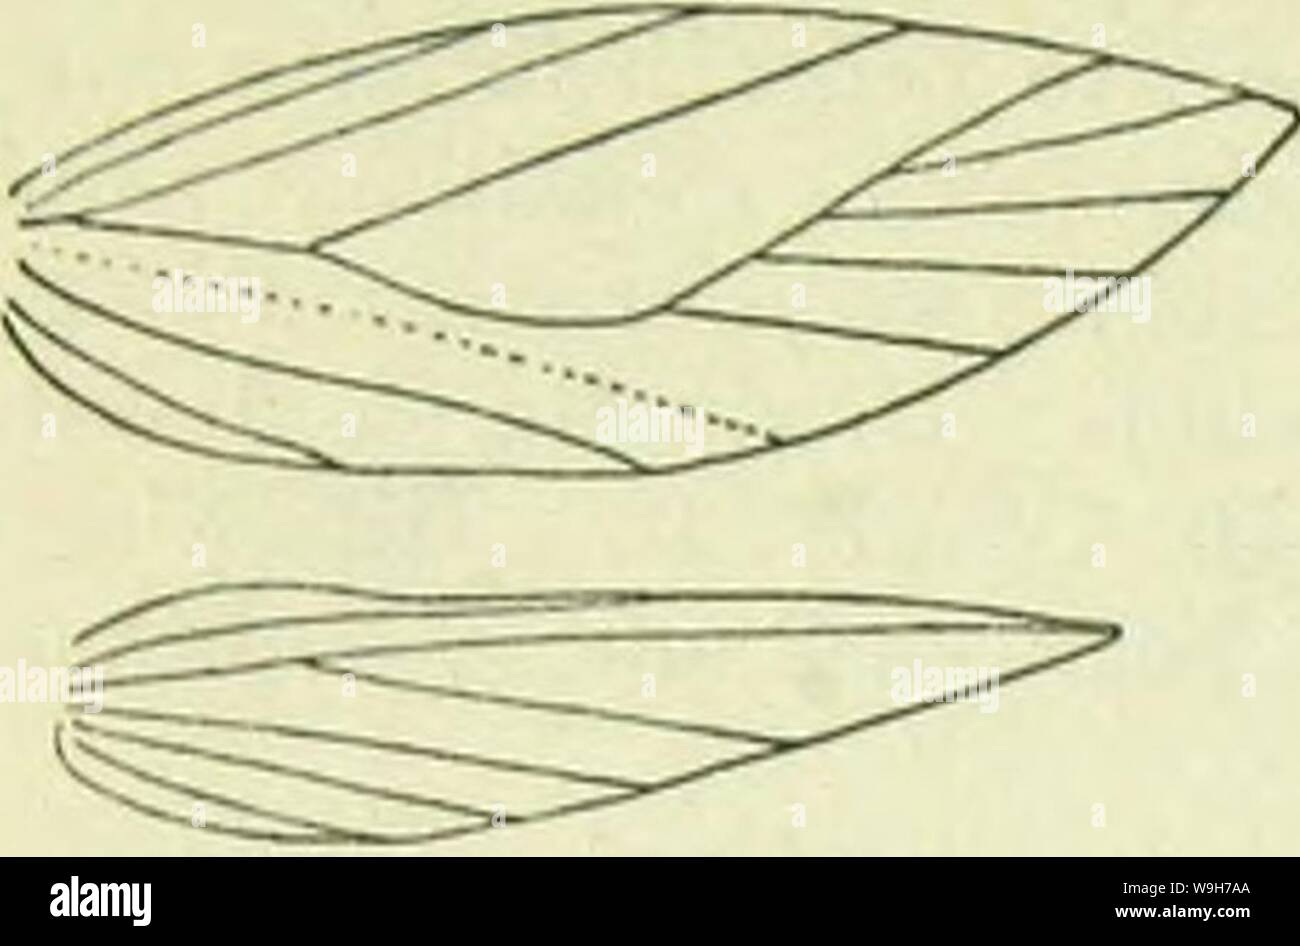 Image d'archive à partir de la page 737 d'un manuel de British lepidoptera. A handbook of British lepidoptera CUbiodiversity1126142 Année : 1895 ( TINEINA SOOLIAUI Nouration [.Une Smlinula mamUella de quadr. sur 8, 9 absents. Ailes postérieures plus de £, lancéolées, cilia 2£ ; cell ouvert entre 2 et 6, 3-5 absent. Seul celui de l'espèce est connue ; elle doit l'approche étroite forme ancestrale commune des deux genres. Son origine est obscure, mais peut probablement être renvoyé à une forme très précoce de la famille, alliés à la teigne et à préserver une grande partie de la structure ancestrale. Imago avec forcwings lancéolées. 1. Banque D'Images